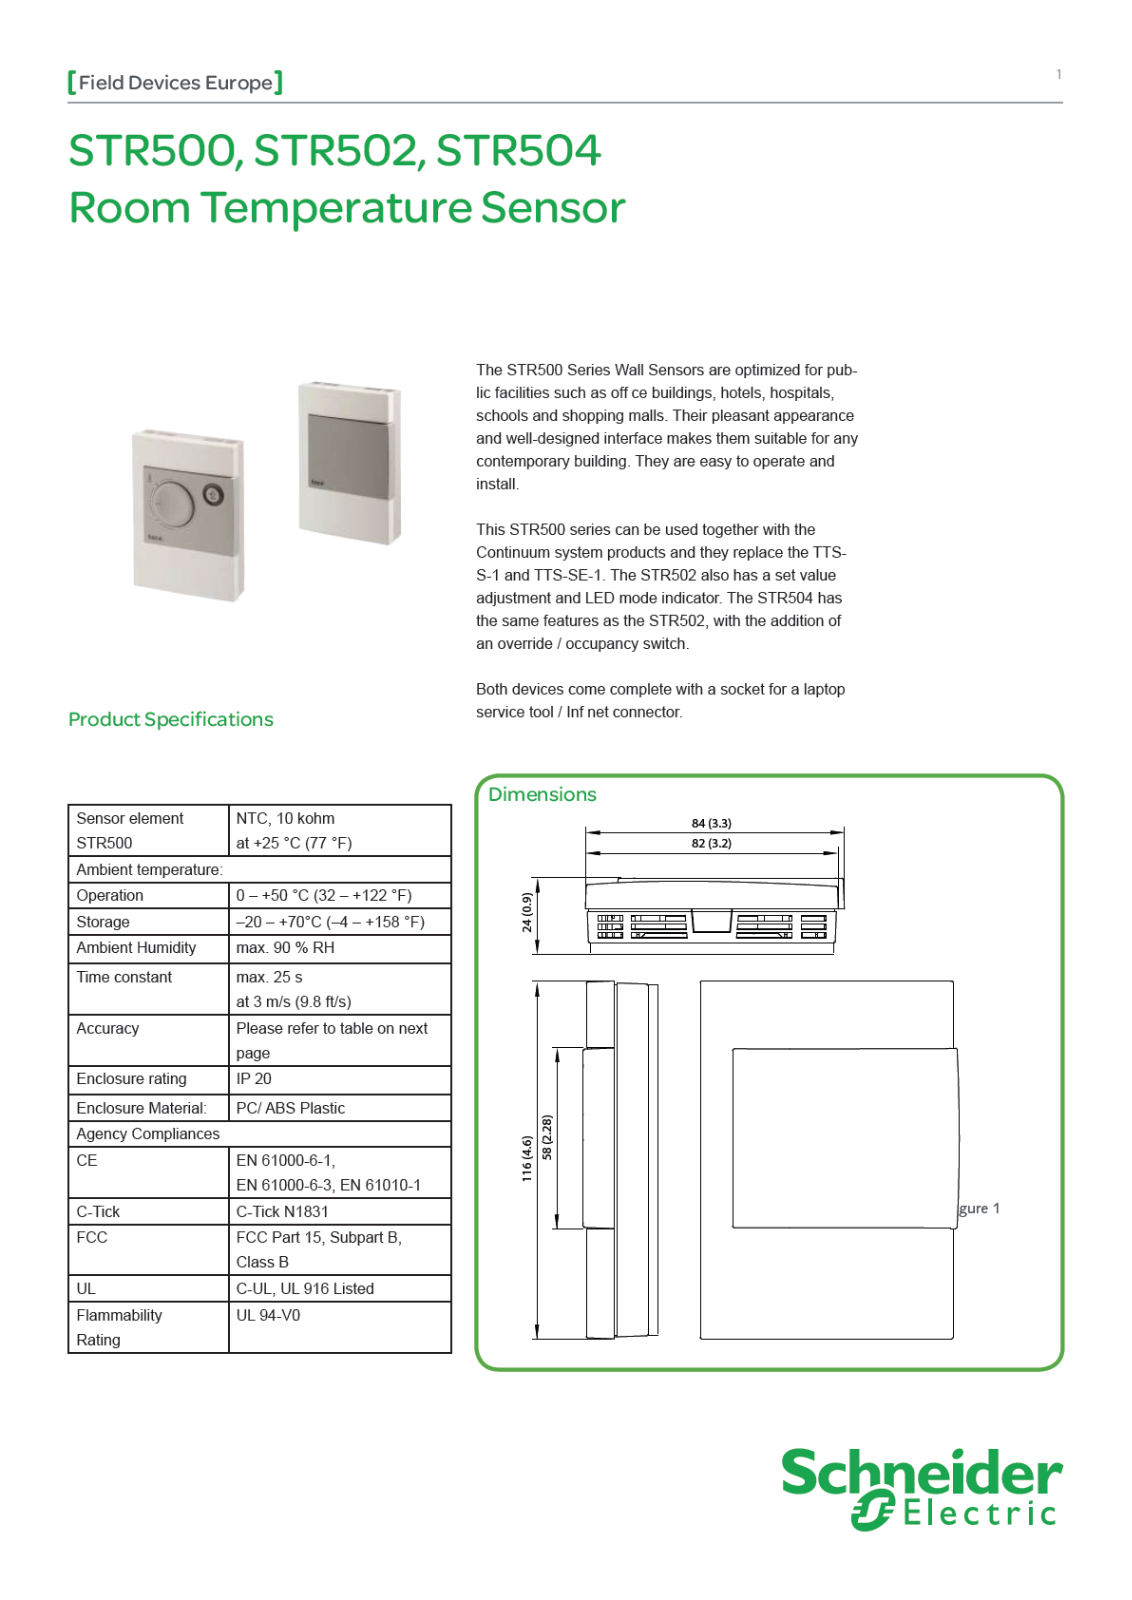 Schneider Electric STR500, STR502, STR504 Data Sheet